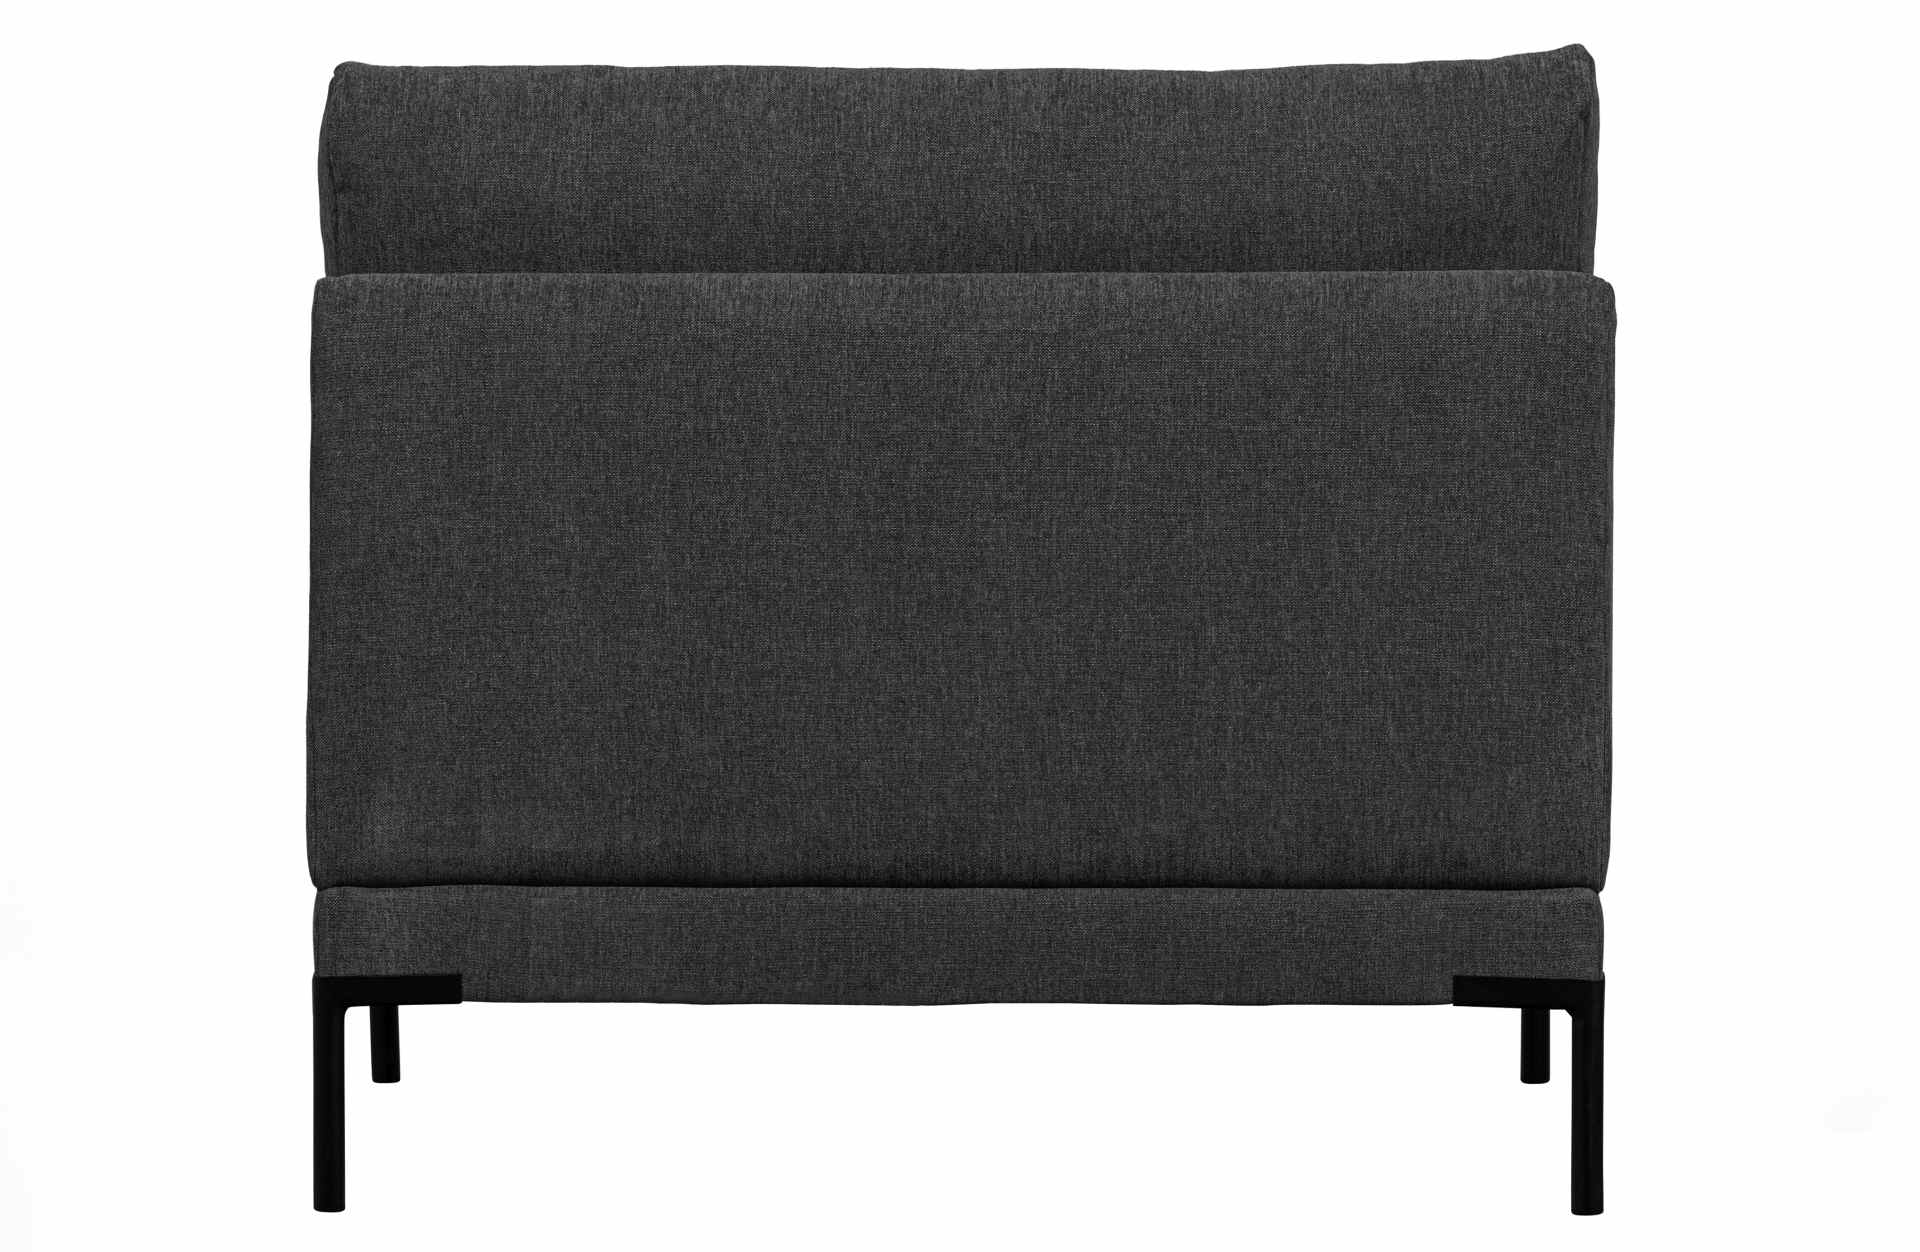 Das Modulsofa Couple Lounge überzeugt mit seinem modernen Design. Das Loveseat Element wurde aus Melange Stoff gefertigt, welcher einen einen dunkelgrauen Farbton besitzen. Das Gestell ist aus Metall und hat eine schwarze Farbe. Das Element hat eine Länge